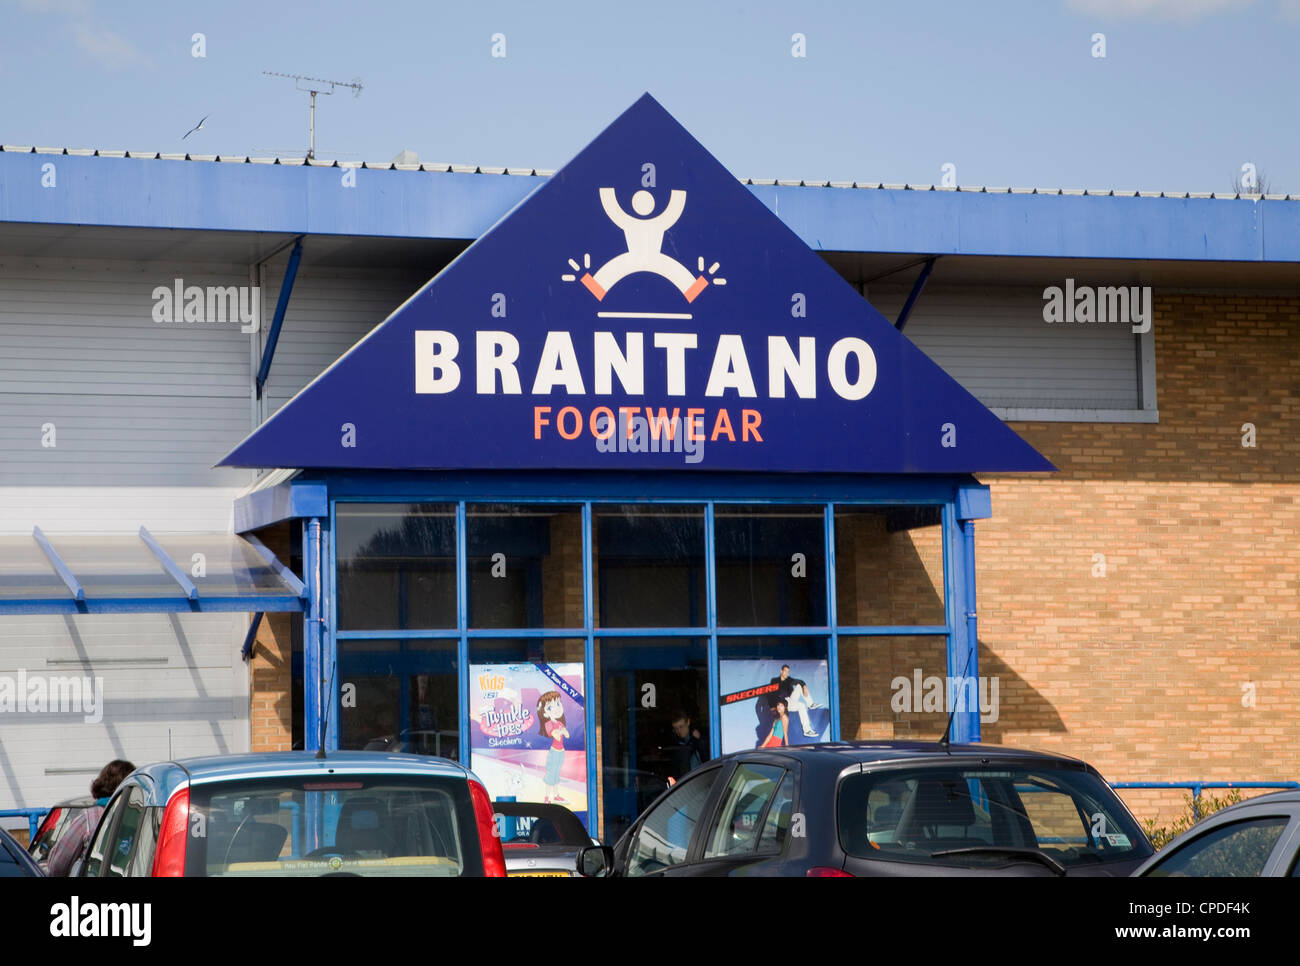 Veraangenamen levenslang zuiverheid Brantano shoes hi-res stock photography and images - Alamy